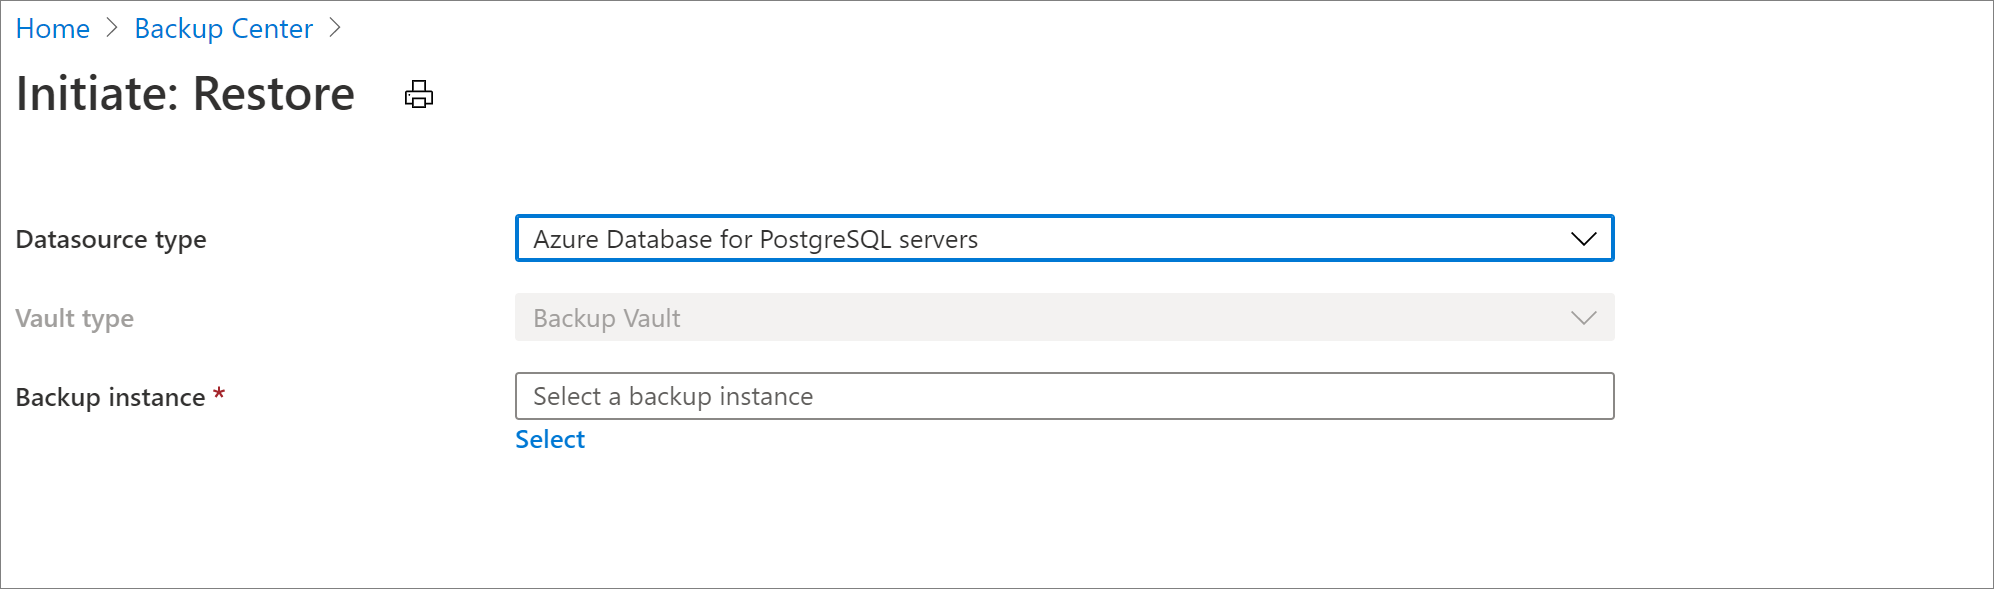 Selecionar a fonte de dados para a restauração do Banco de Dados do Azure para PostgreSQL Server